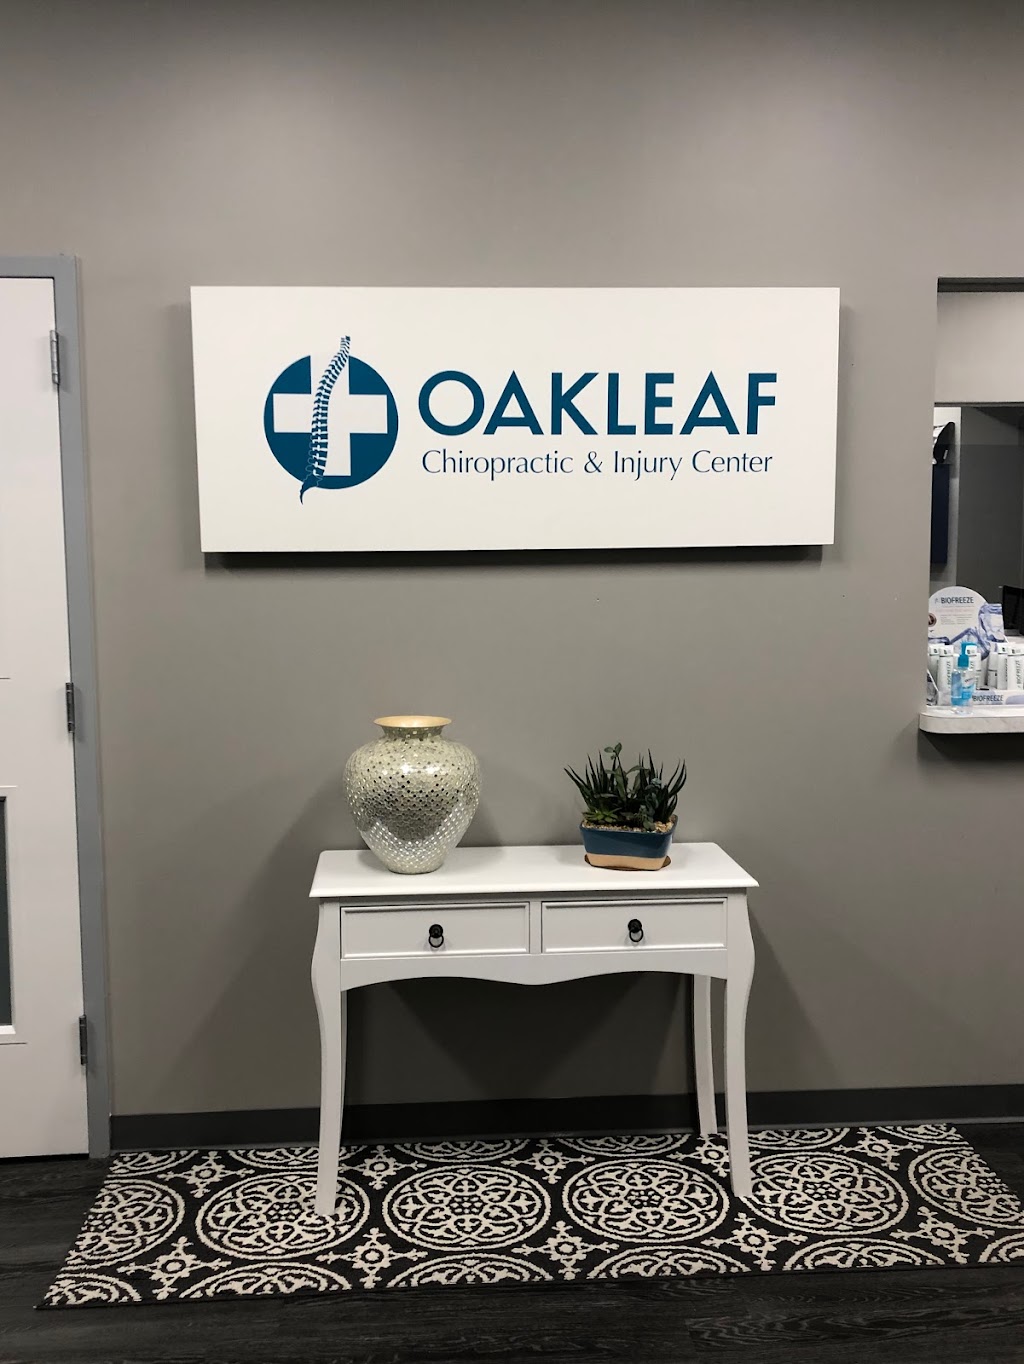 Oakleaf Chiropractic & Injury Center | 9785 Crosshill Blvd Ste. 108, Jacksonville, FL 32222, USA | Phone: (904) 772-6522